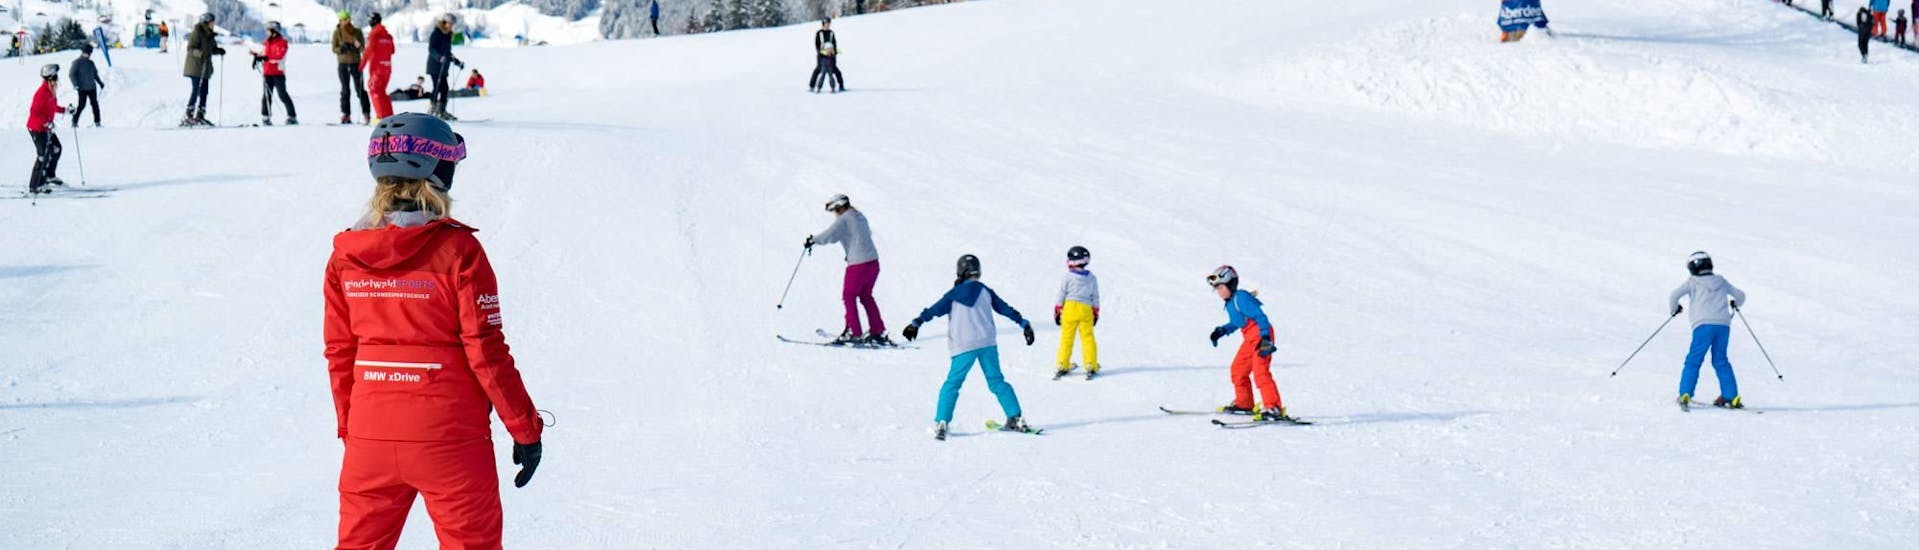 Een gezin vermaakt zich tijdens de skicursus "Family Fun Day" met sleeën met de Zwitserse skischool Grindelwald.